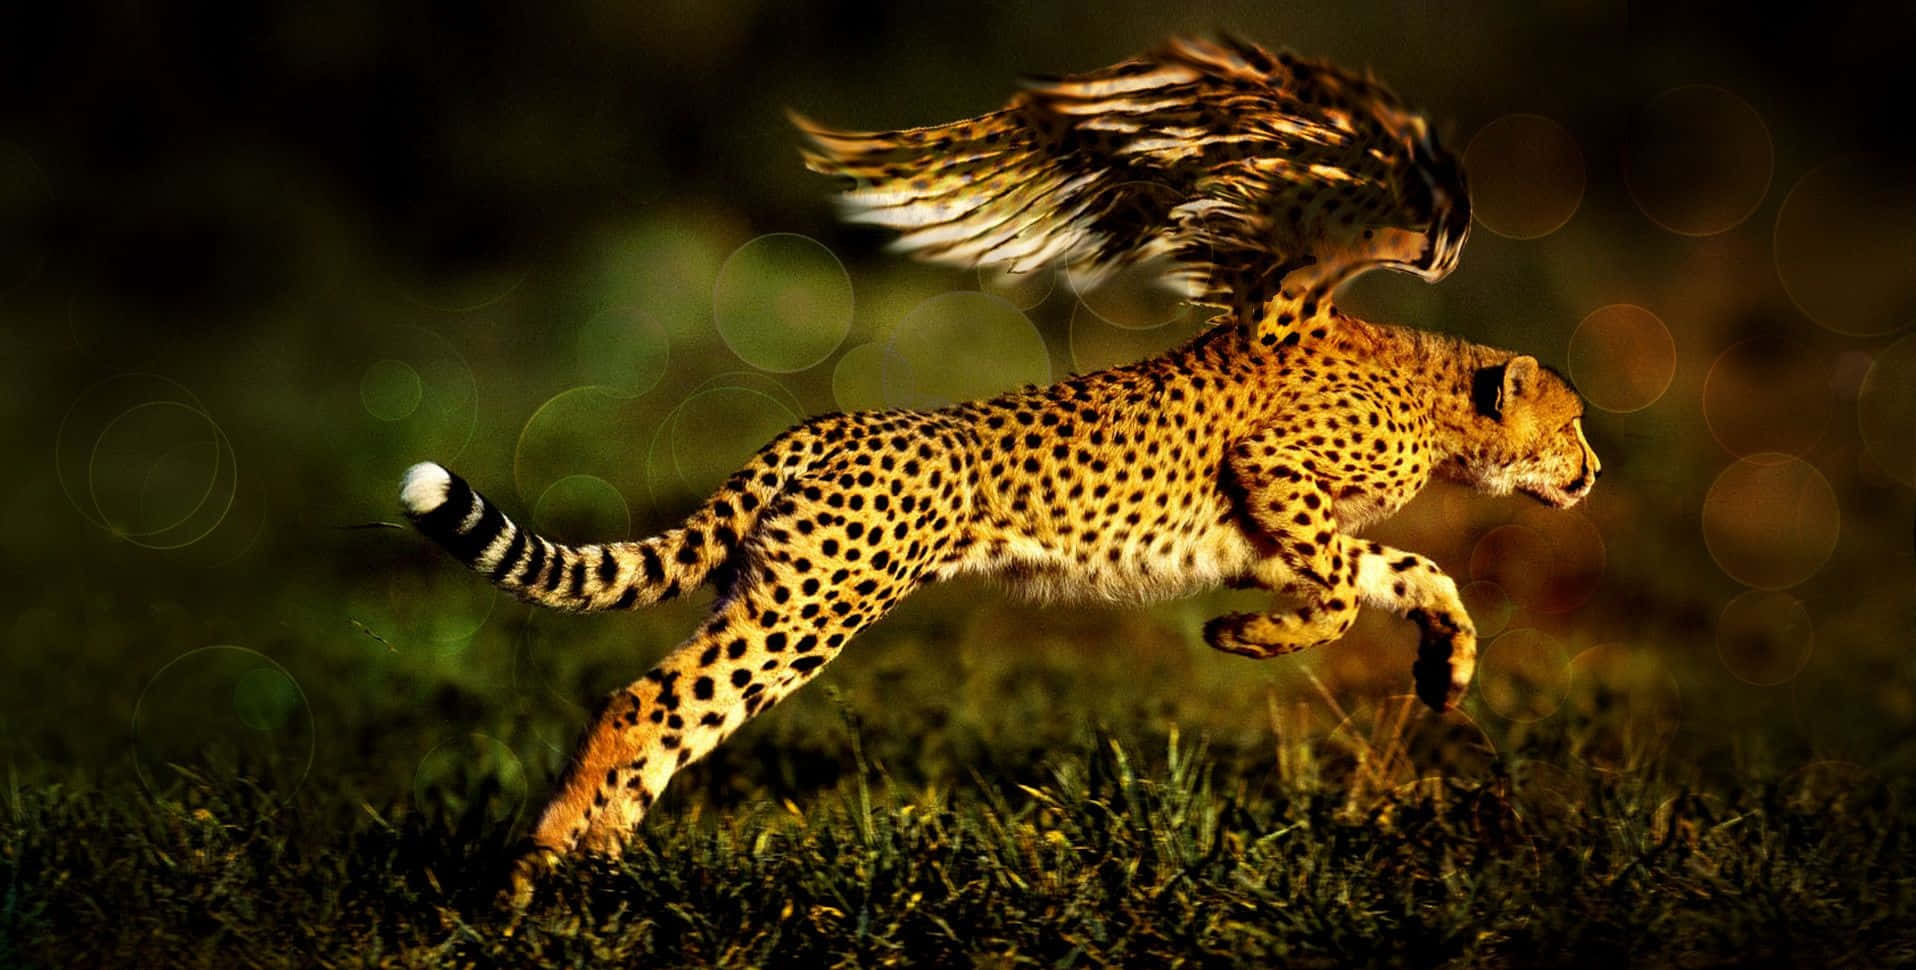 Stunningesporträt Eines Bedrohten Geparden In Seinem Natürlichen Lebensraum.